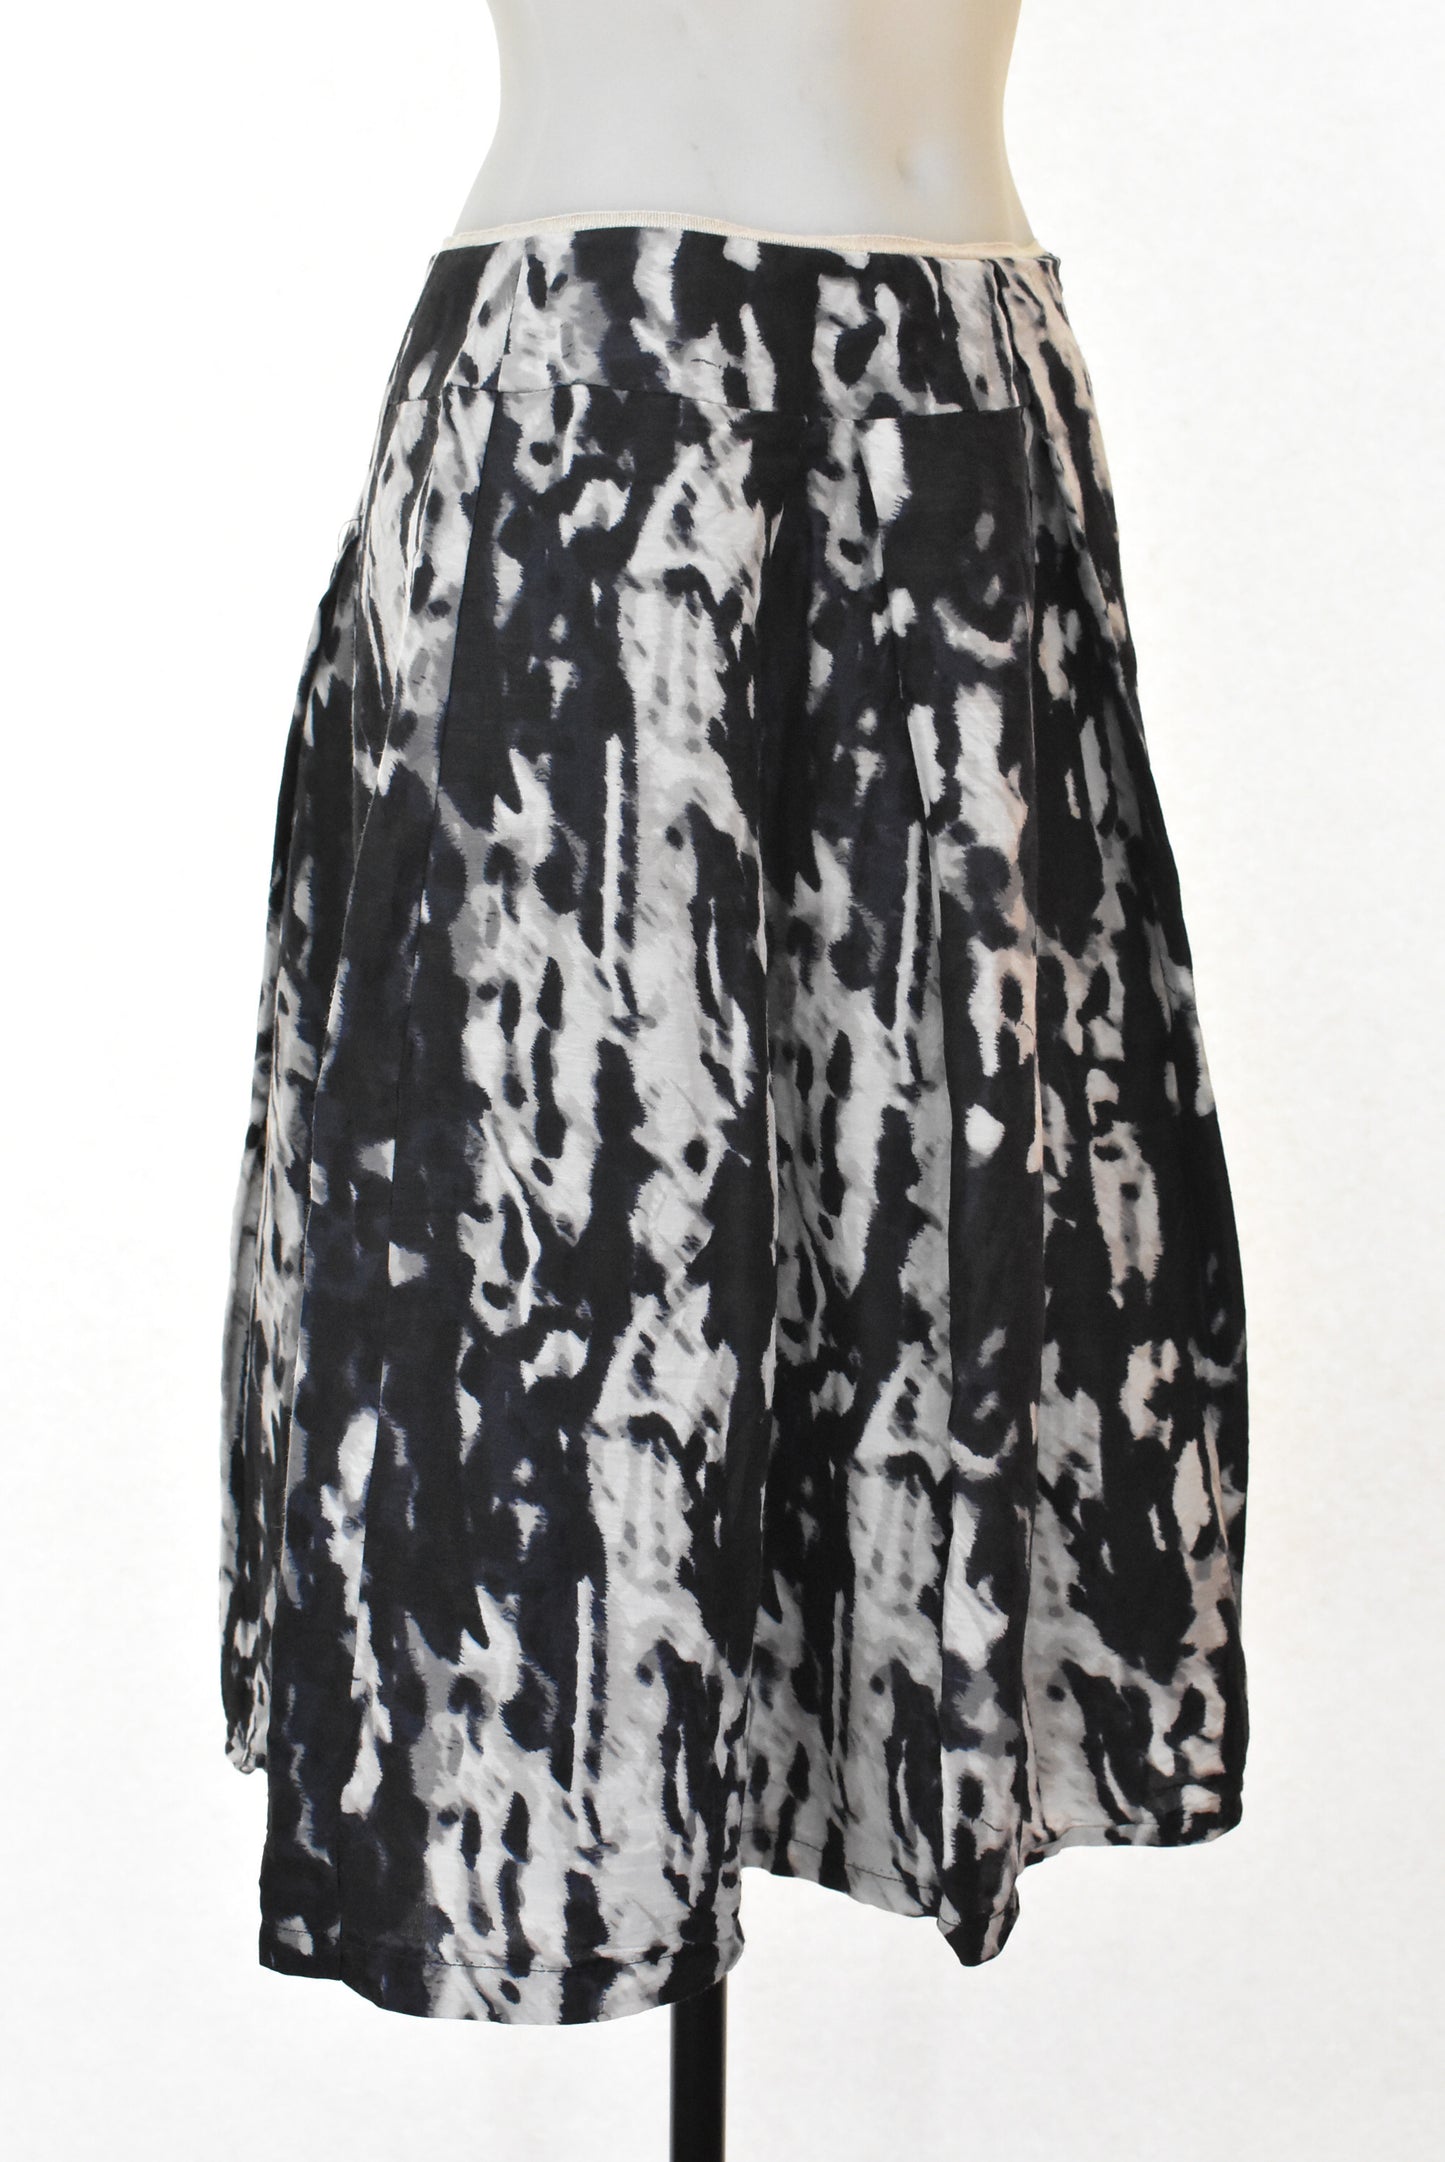 Veronika Maine linen & silk blend skirt, 10